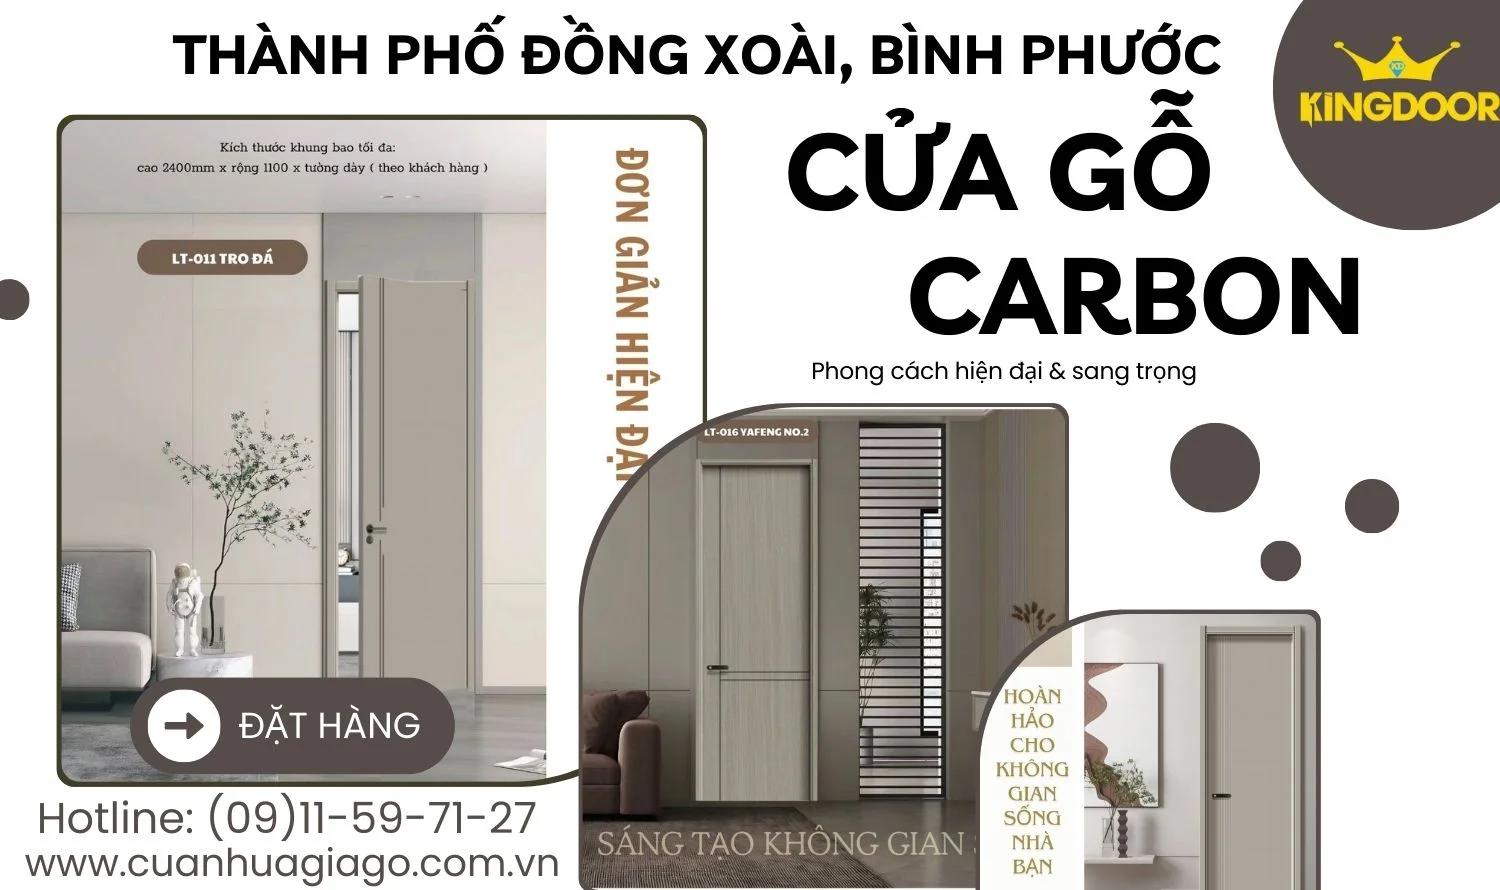 AVT-cua-go-carbon-tp.dong-xoai-binh-phuoc-kingdoor